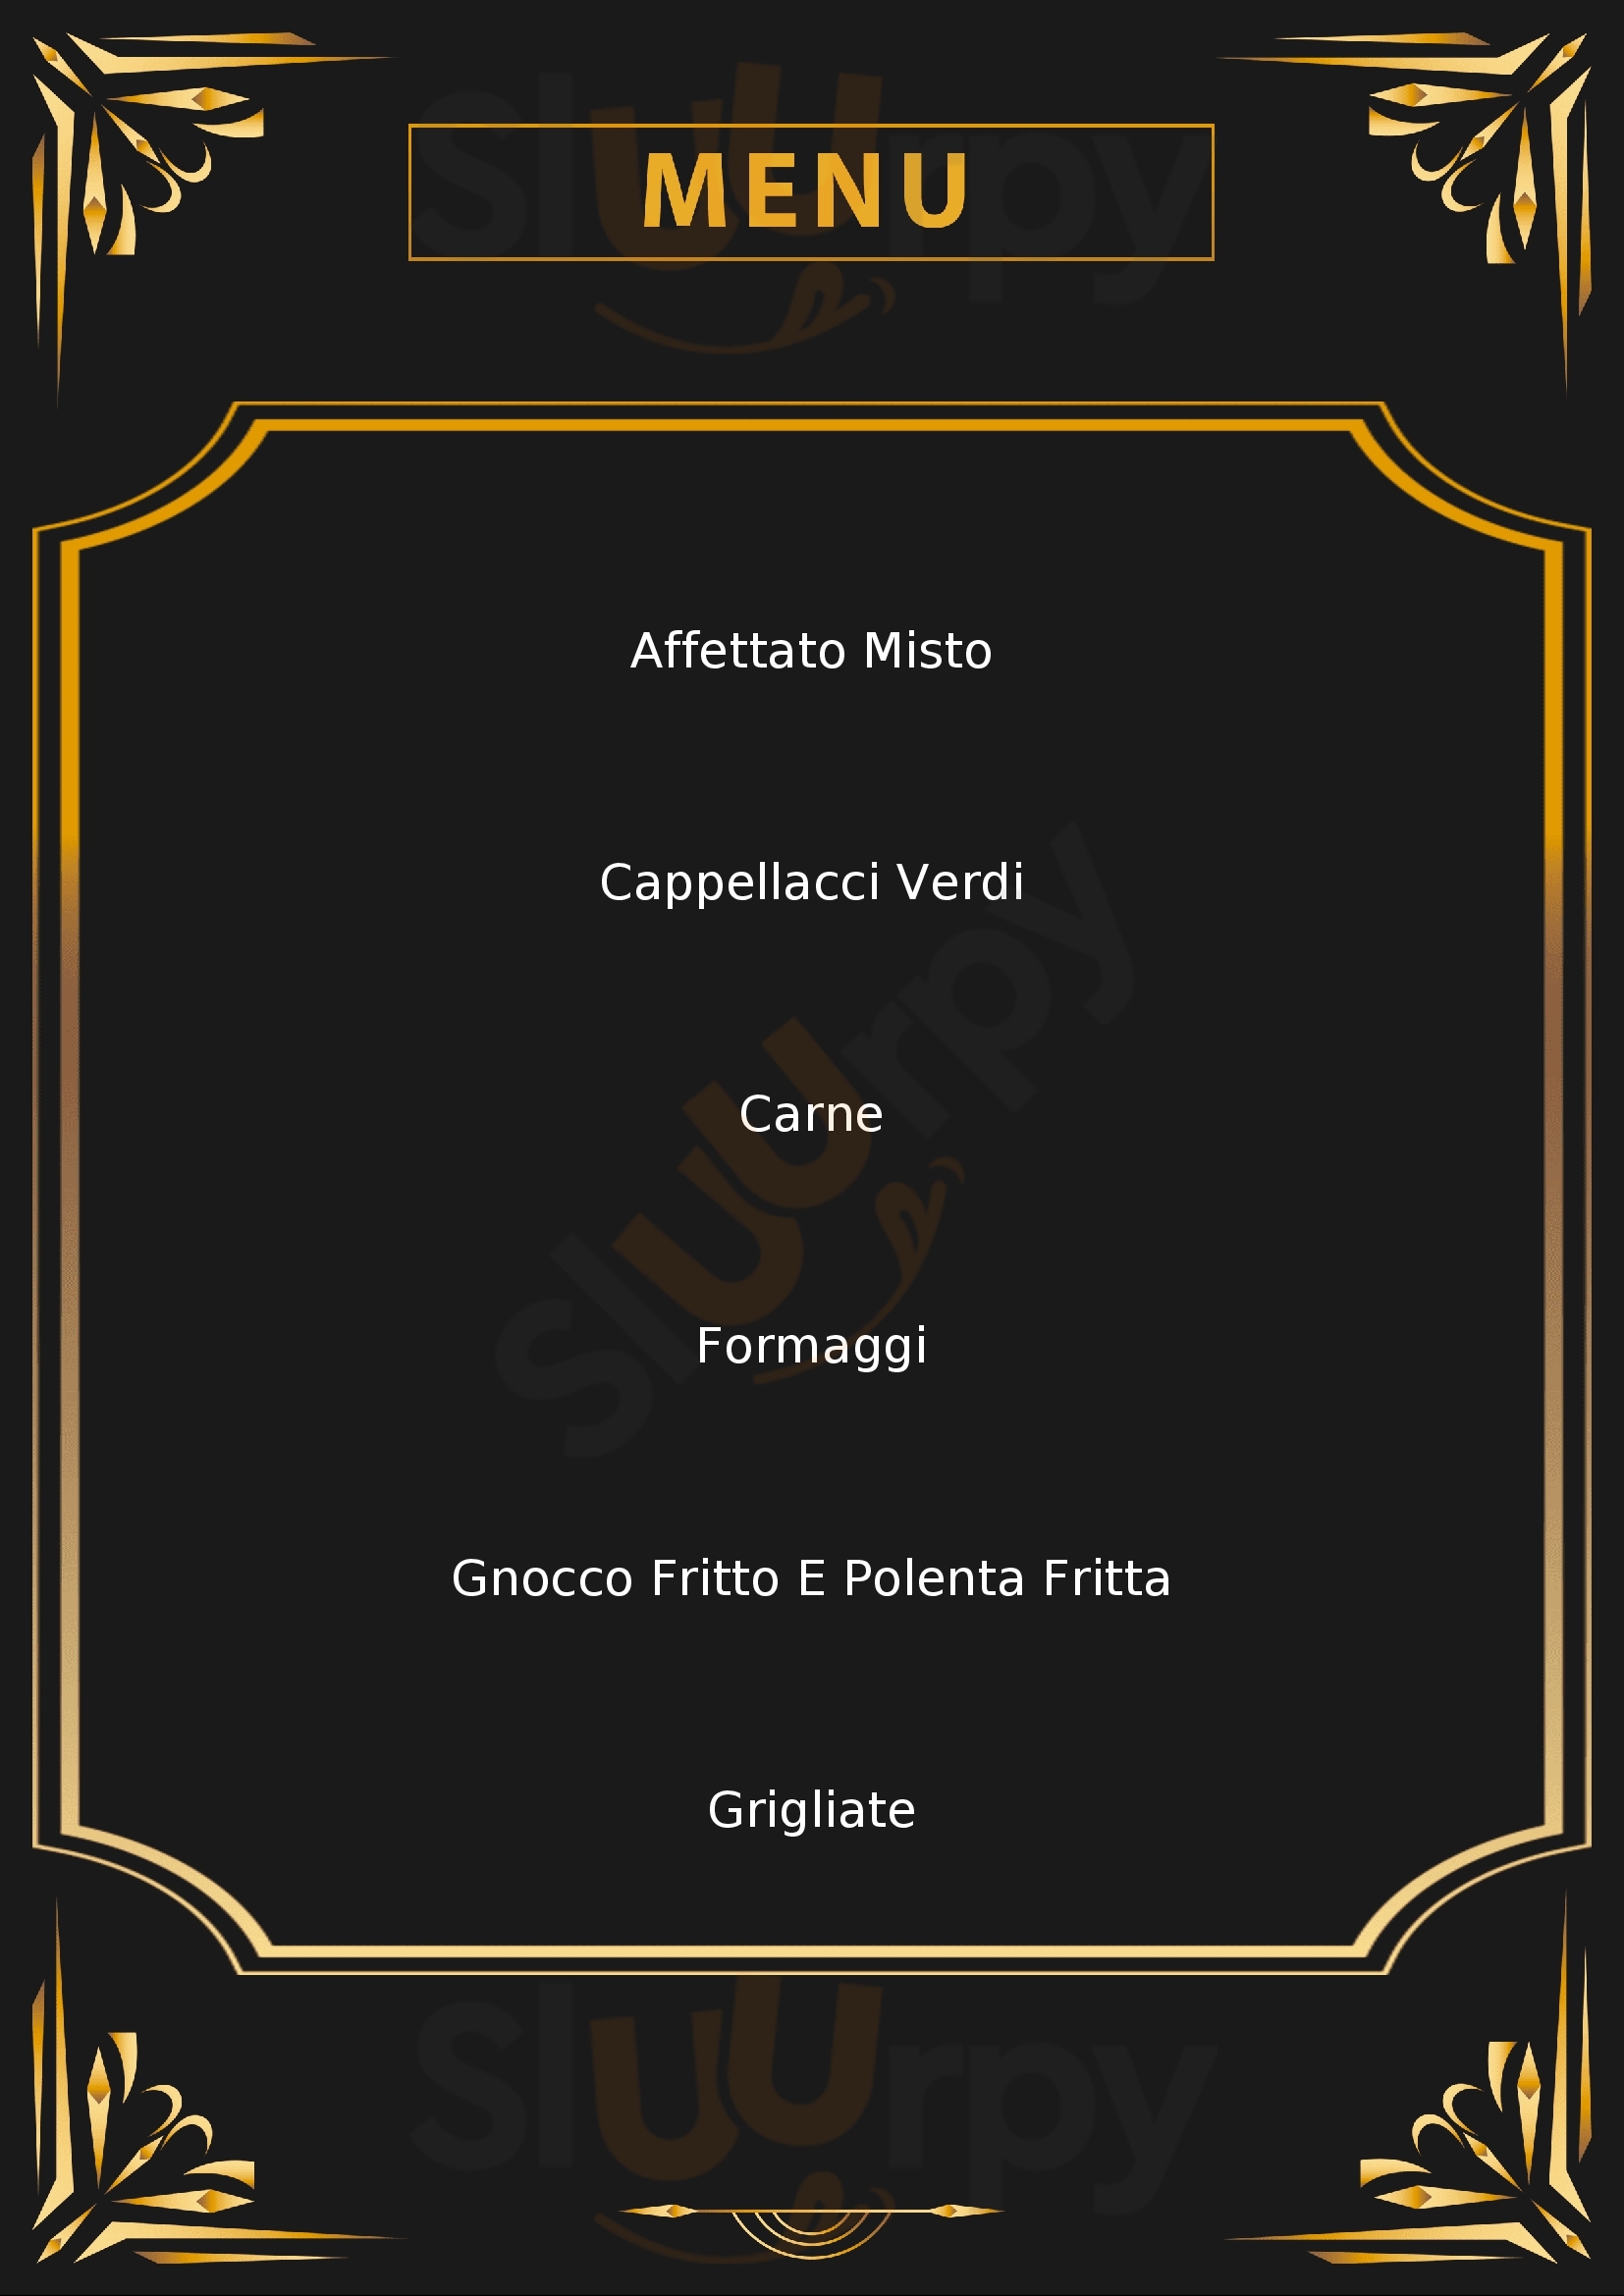 L'Osteria Correggio menù 1 pagina